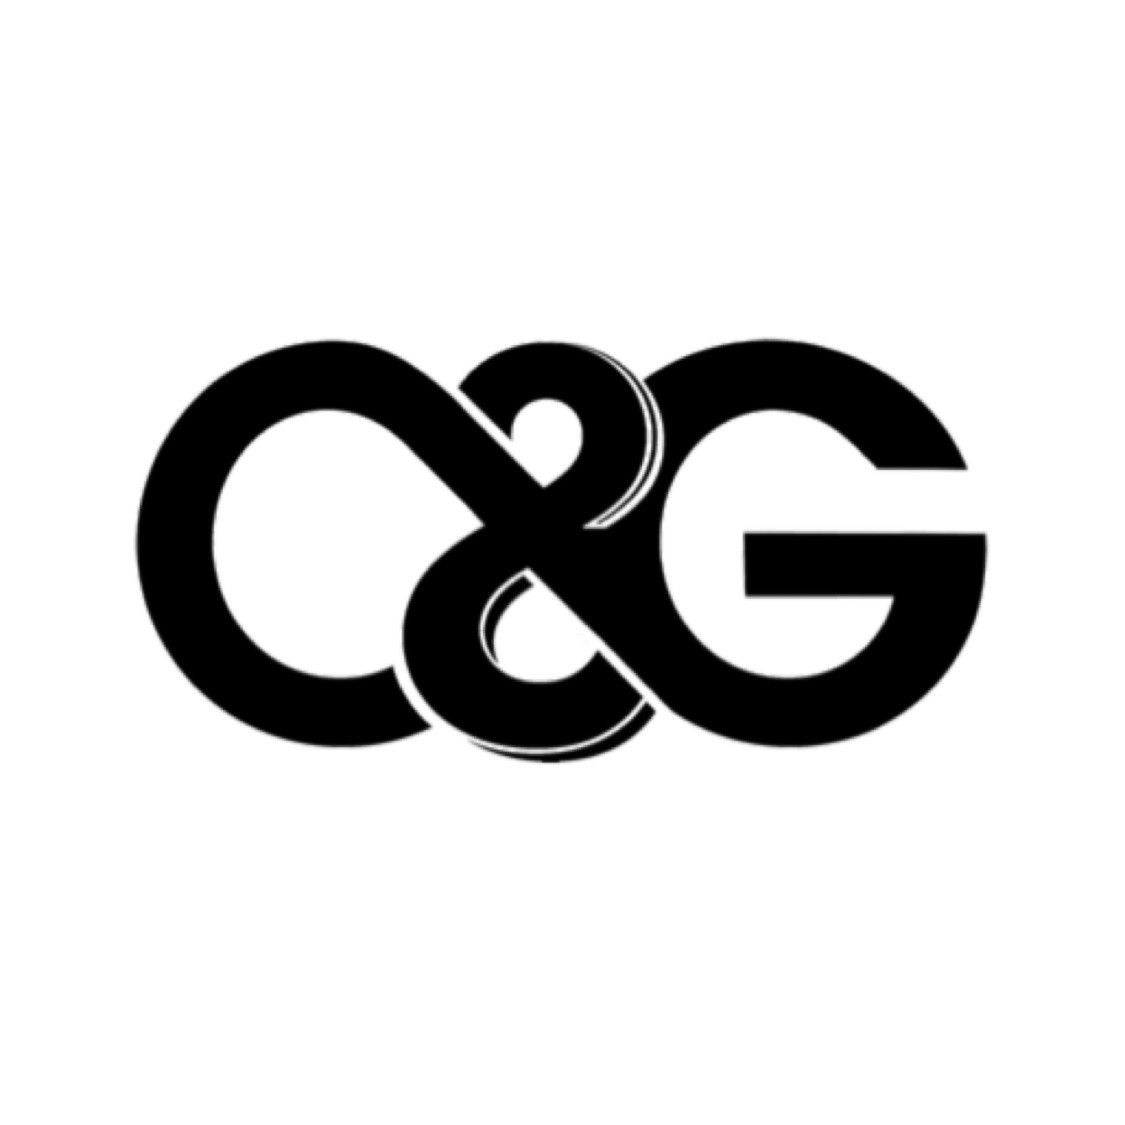 G c cg. Логотип c c. Логотип g. CG логотип бренда. Логотип с буквами CG.